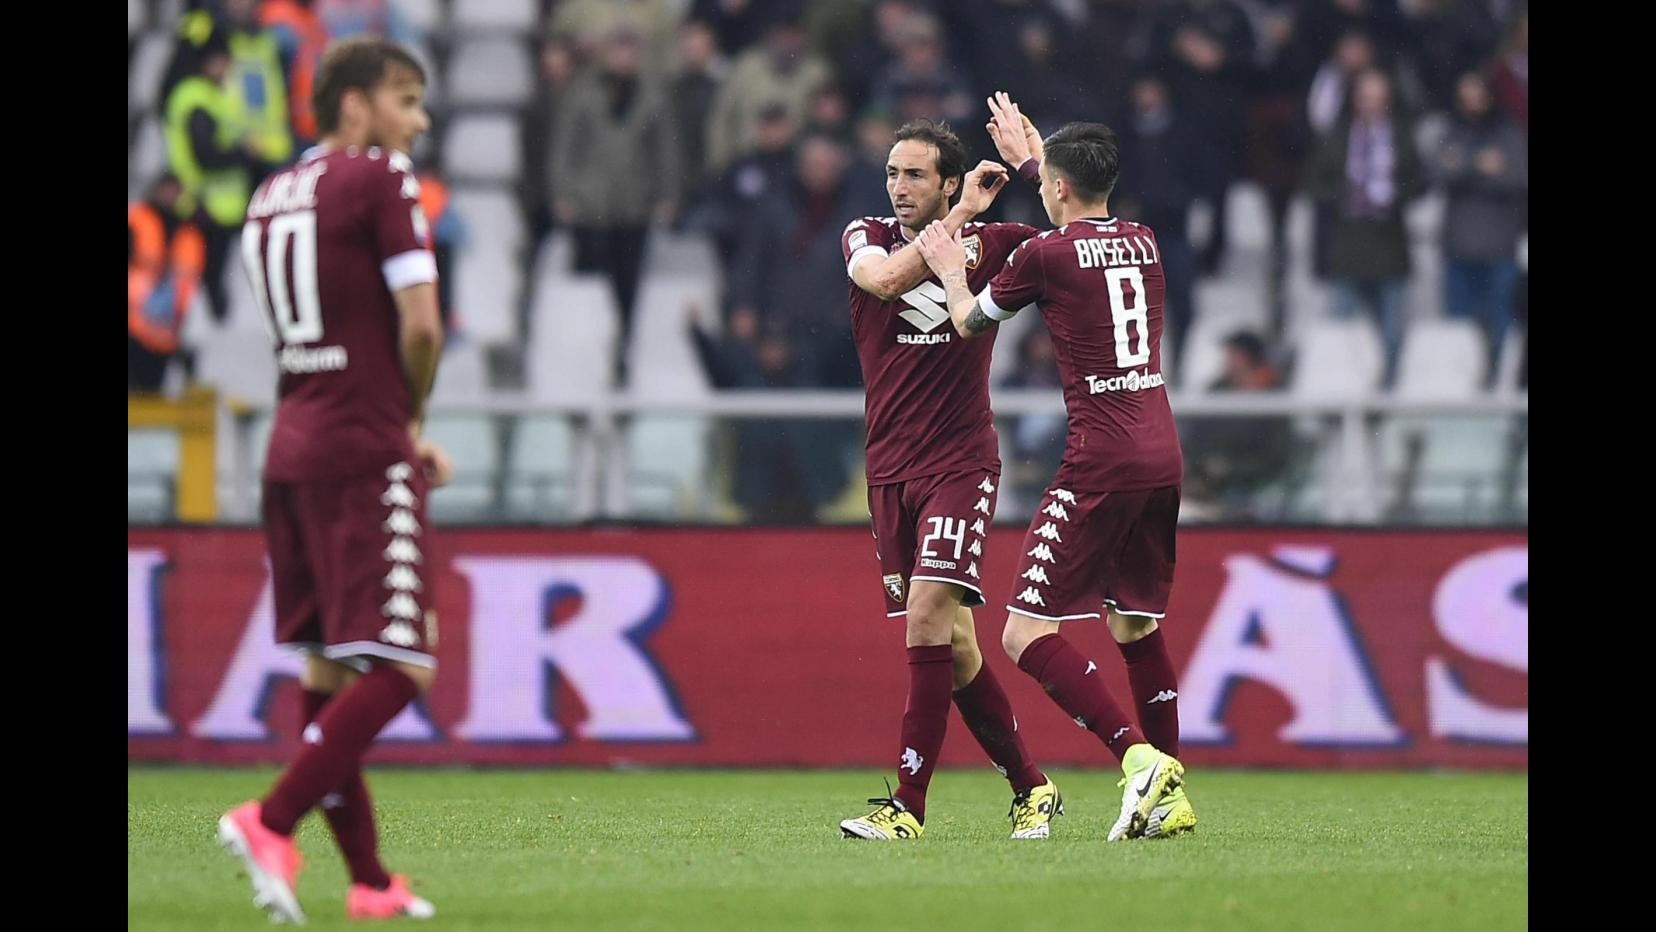 FOTO Serie A, pareggio tra Toro e Udinese: il match finisce 2-2